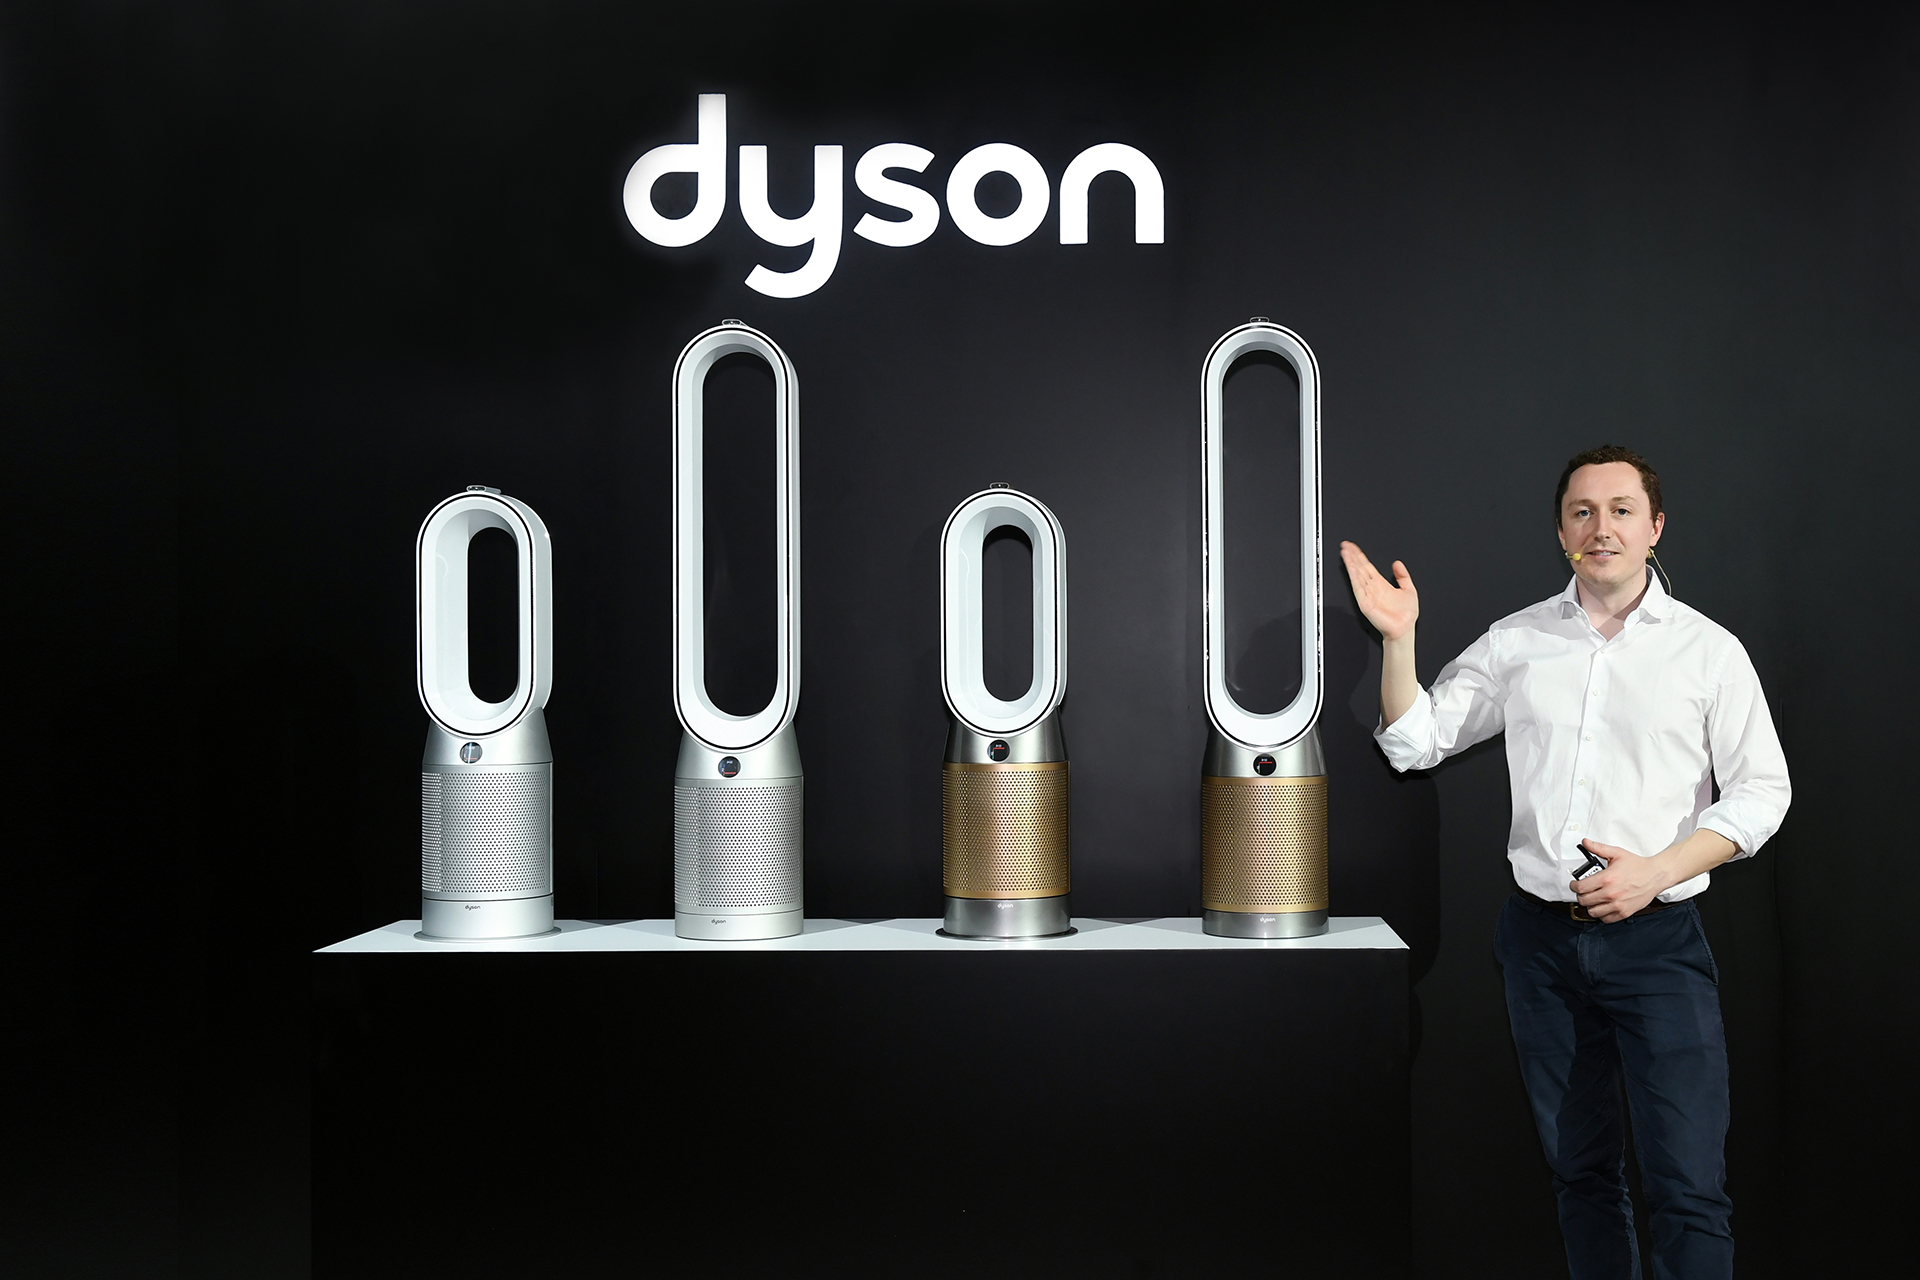 戴森上海科技实验室负责人Archie Henderson现场展示戴森Dyson Purifier空气净化风扇系列